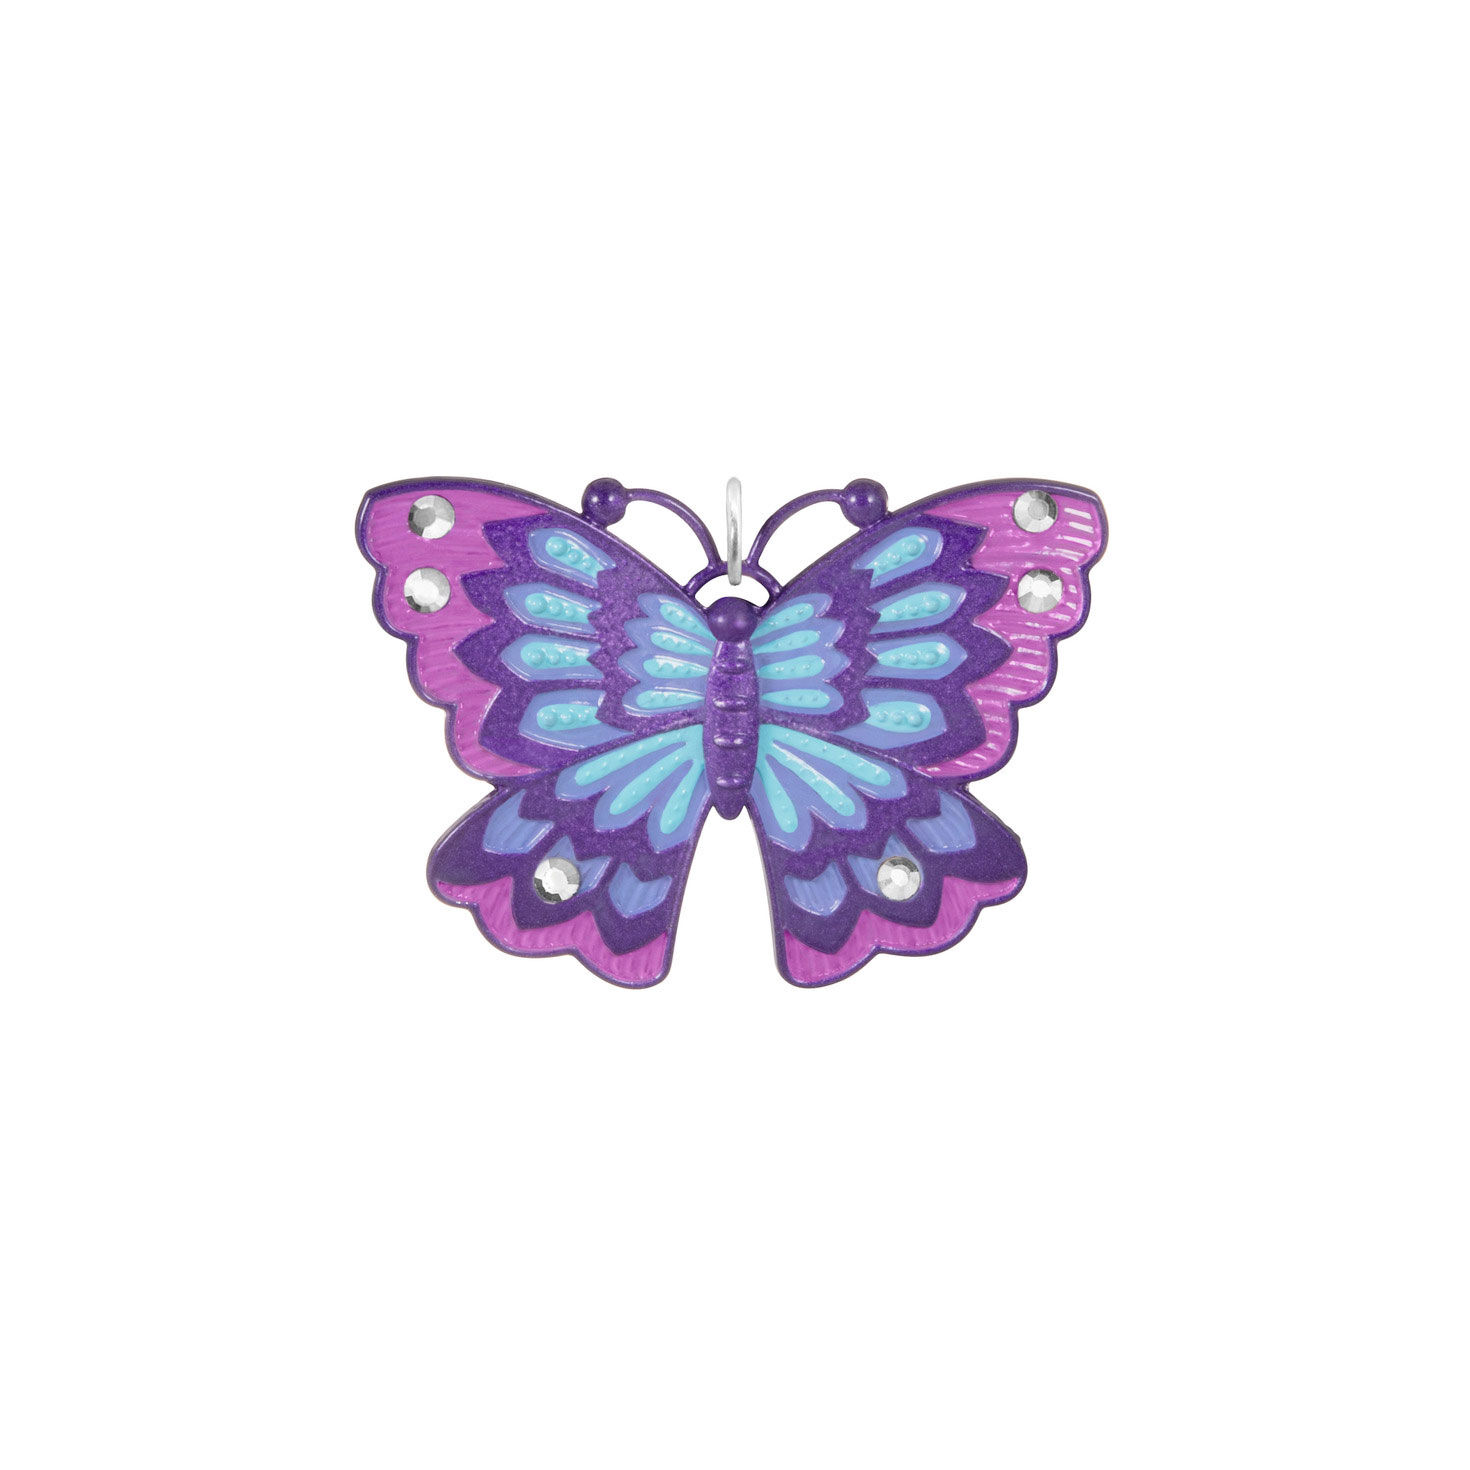 Butterfly Tumbler, Blue Purple Butterfly Gift, Butterfly Drinking